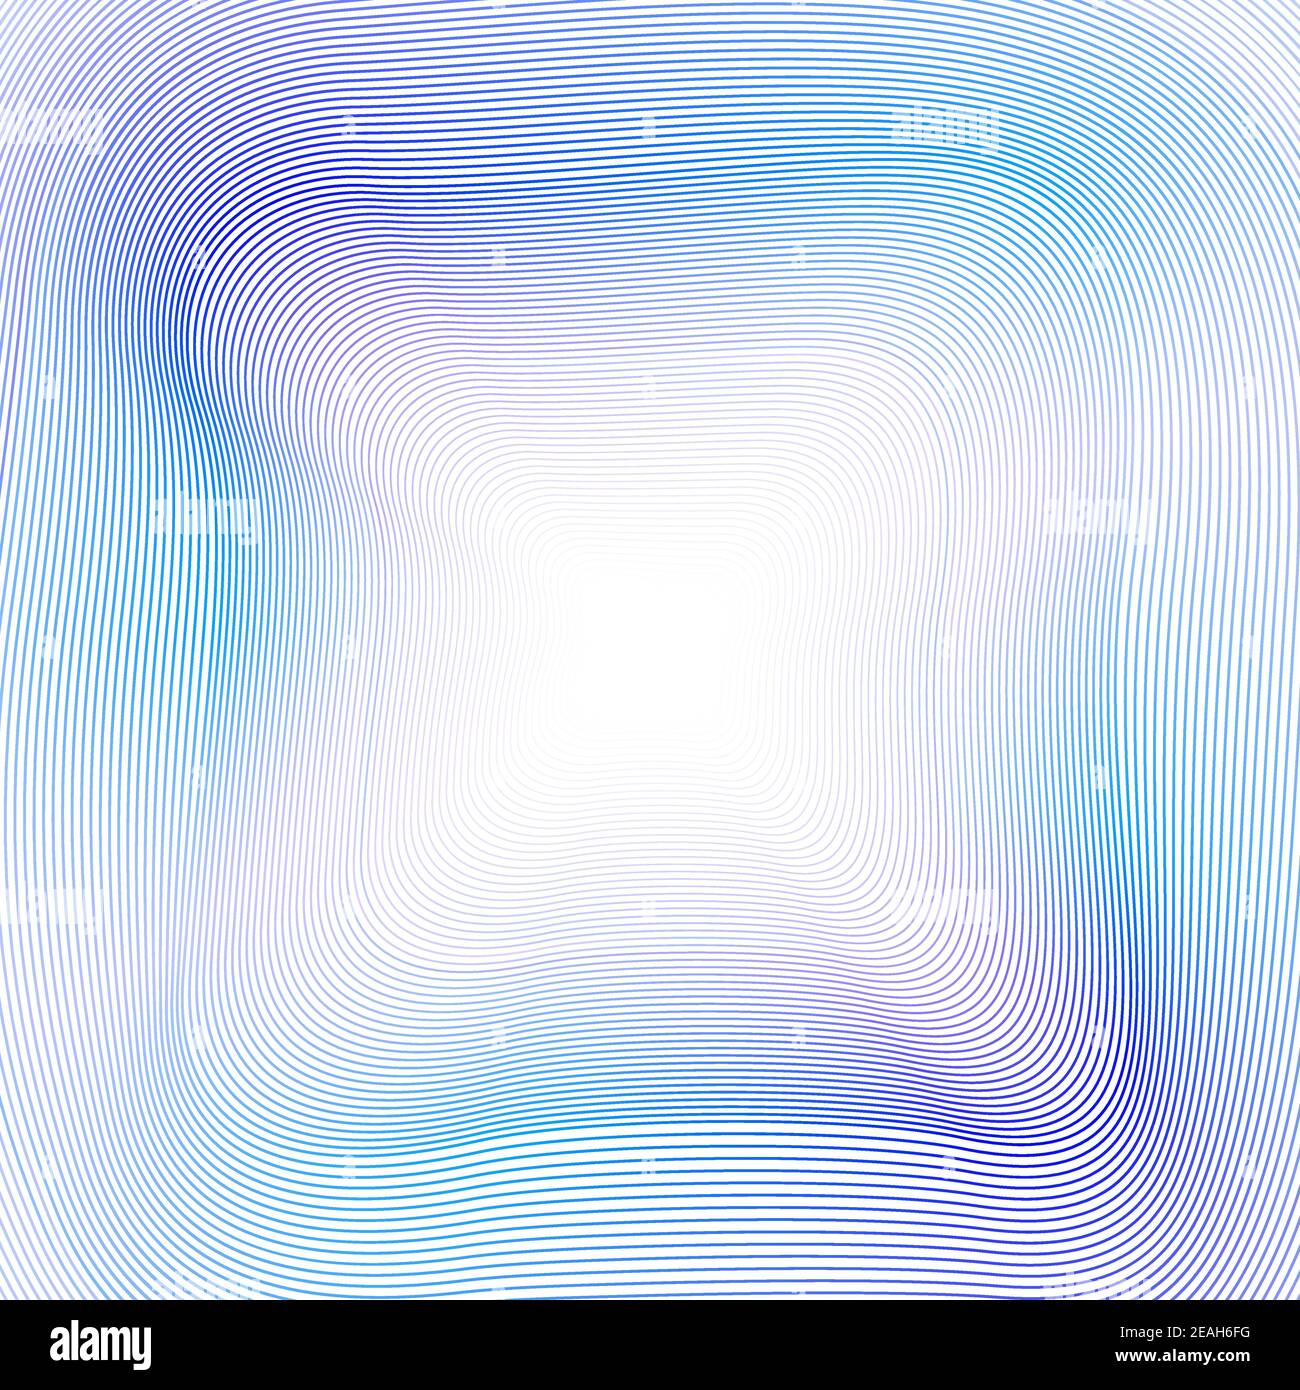 Technologie gestreifter Hintergrund von blauen, lila welligen Linien. Weicher, mehrfarbiger Farbverlauf. Kreative Linie Kunst Design. Abstrakt leuchtende Kurven. Vektor EPS10 Stock Vektor